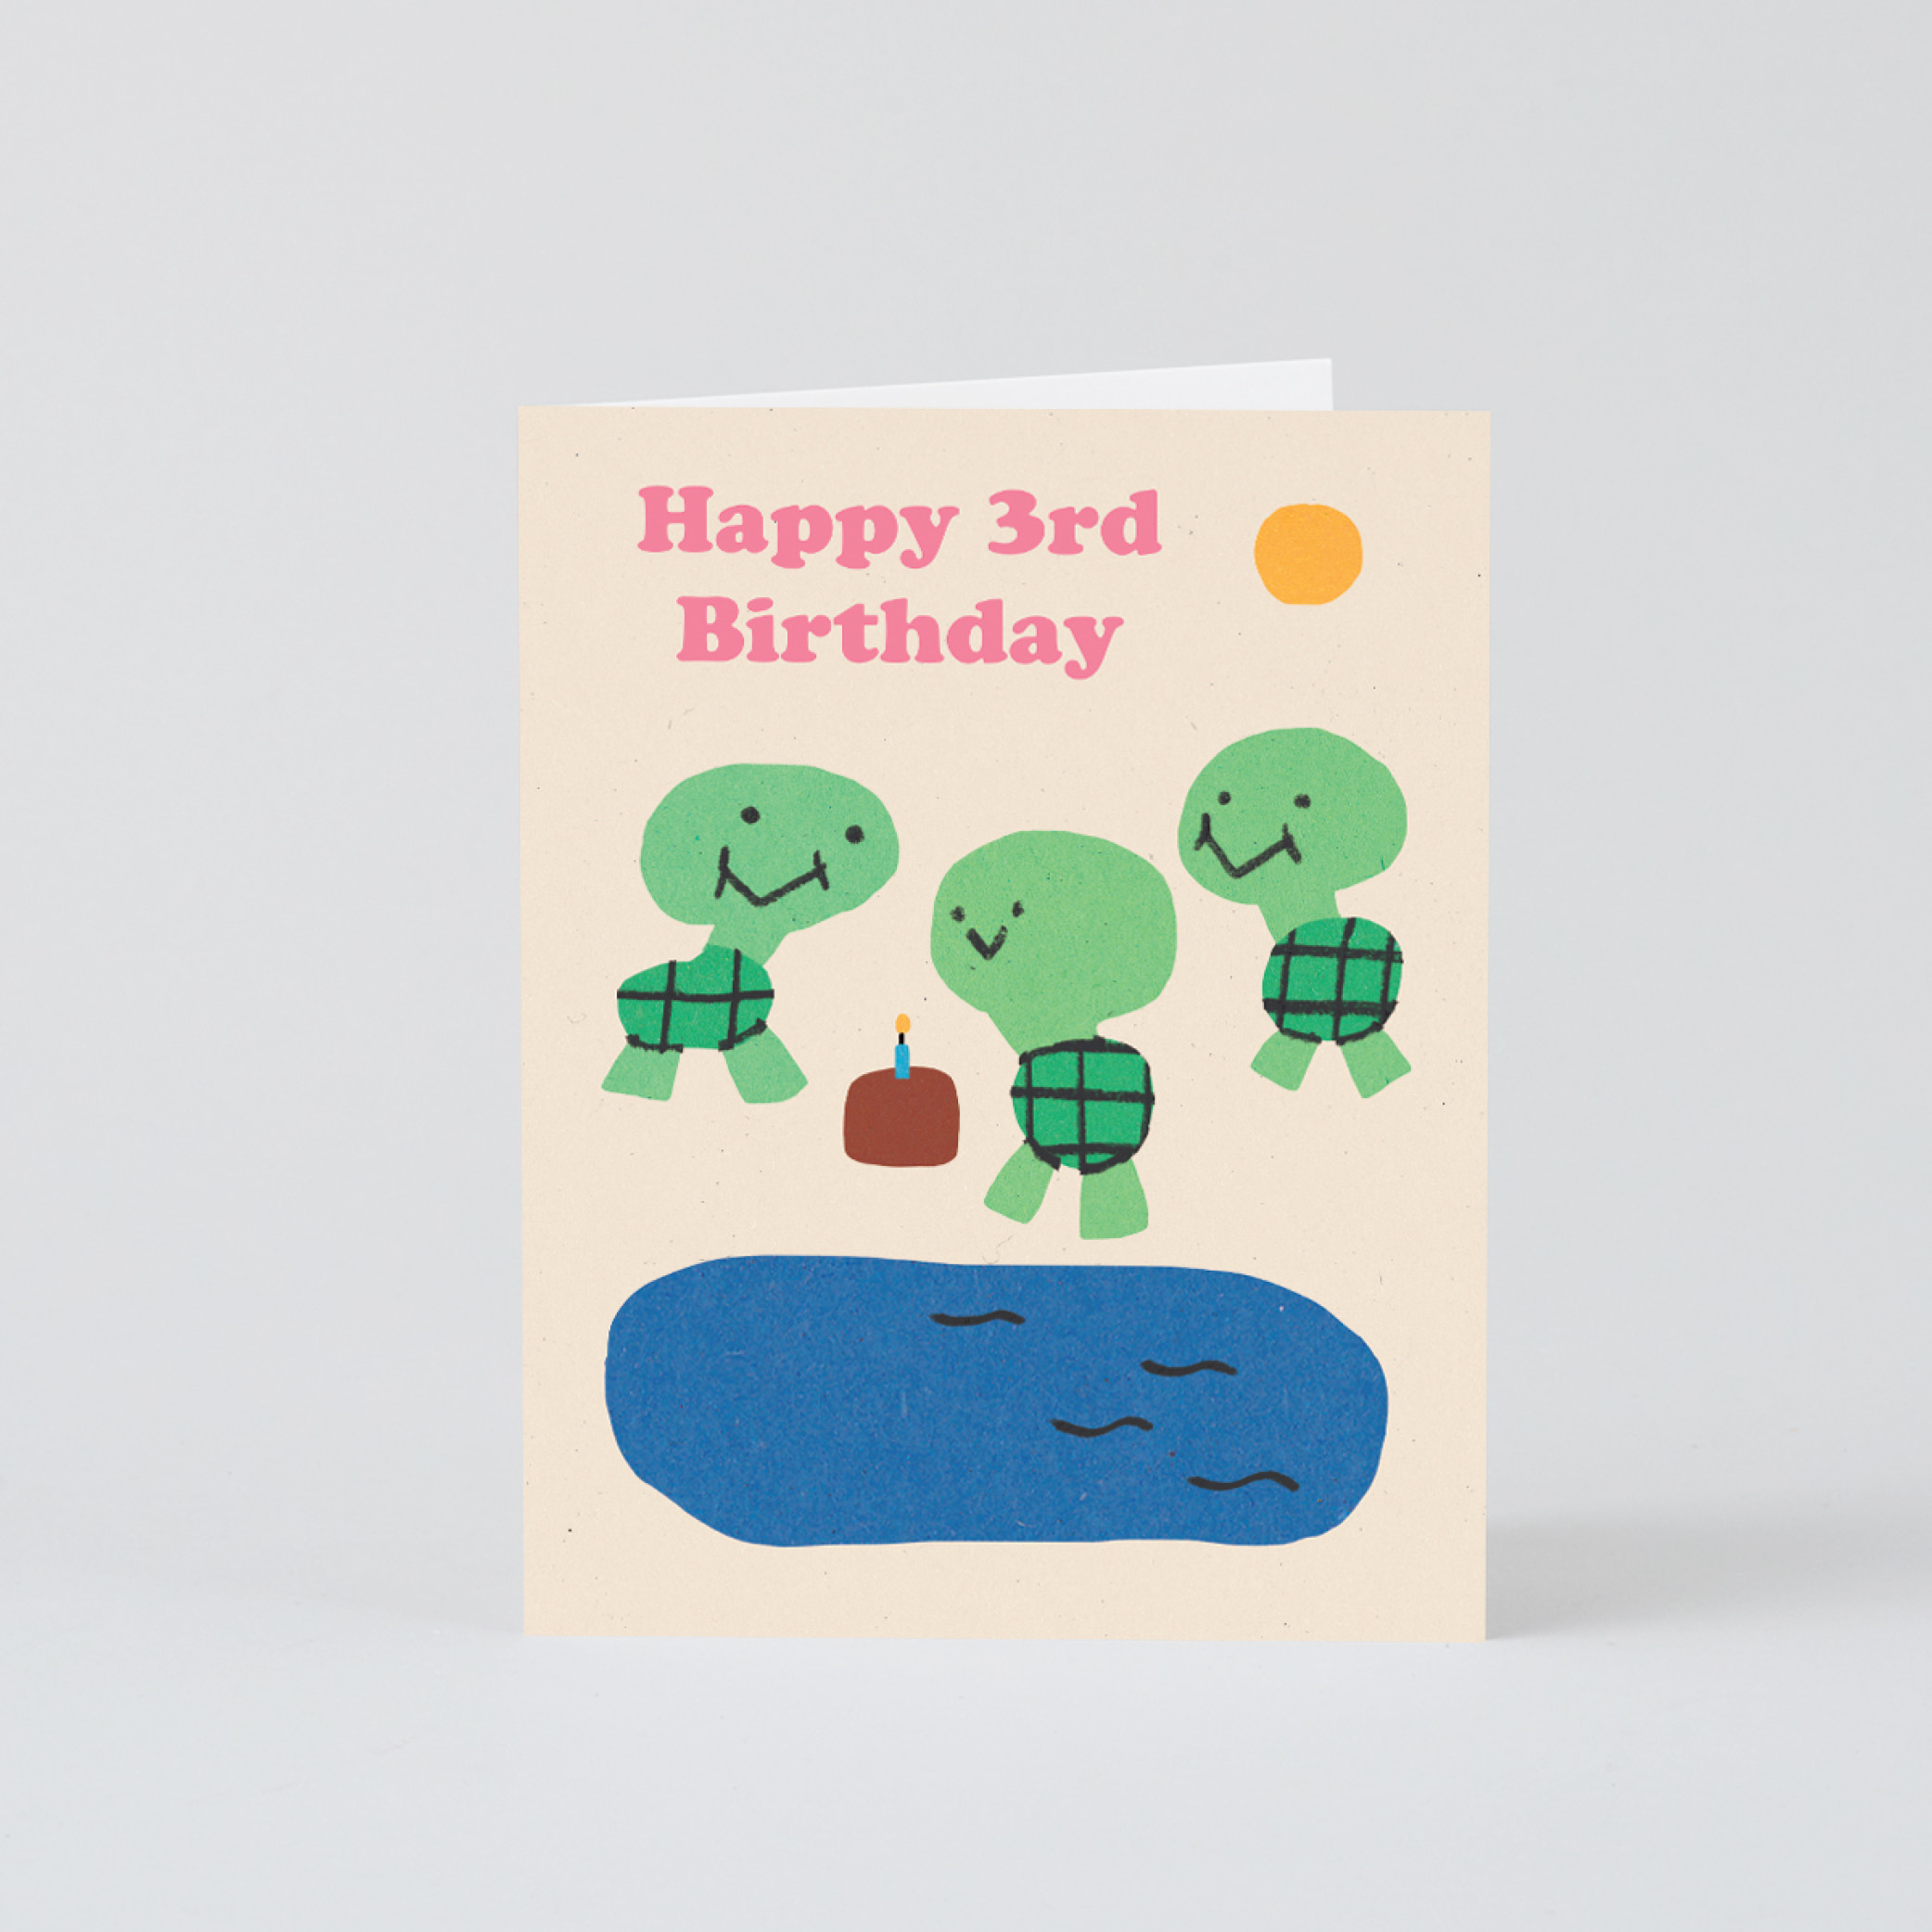 [WRAP] Happy 3rd Birthday Card